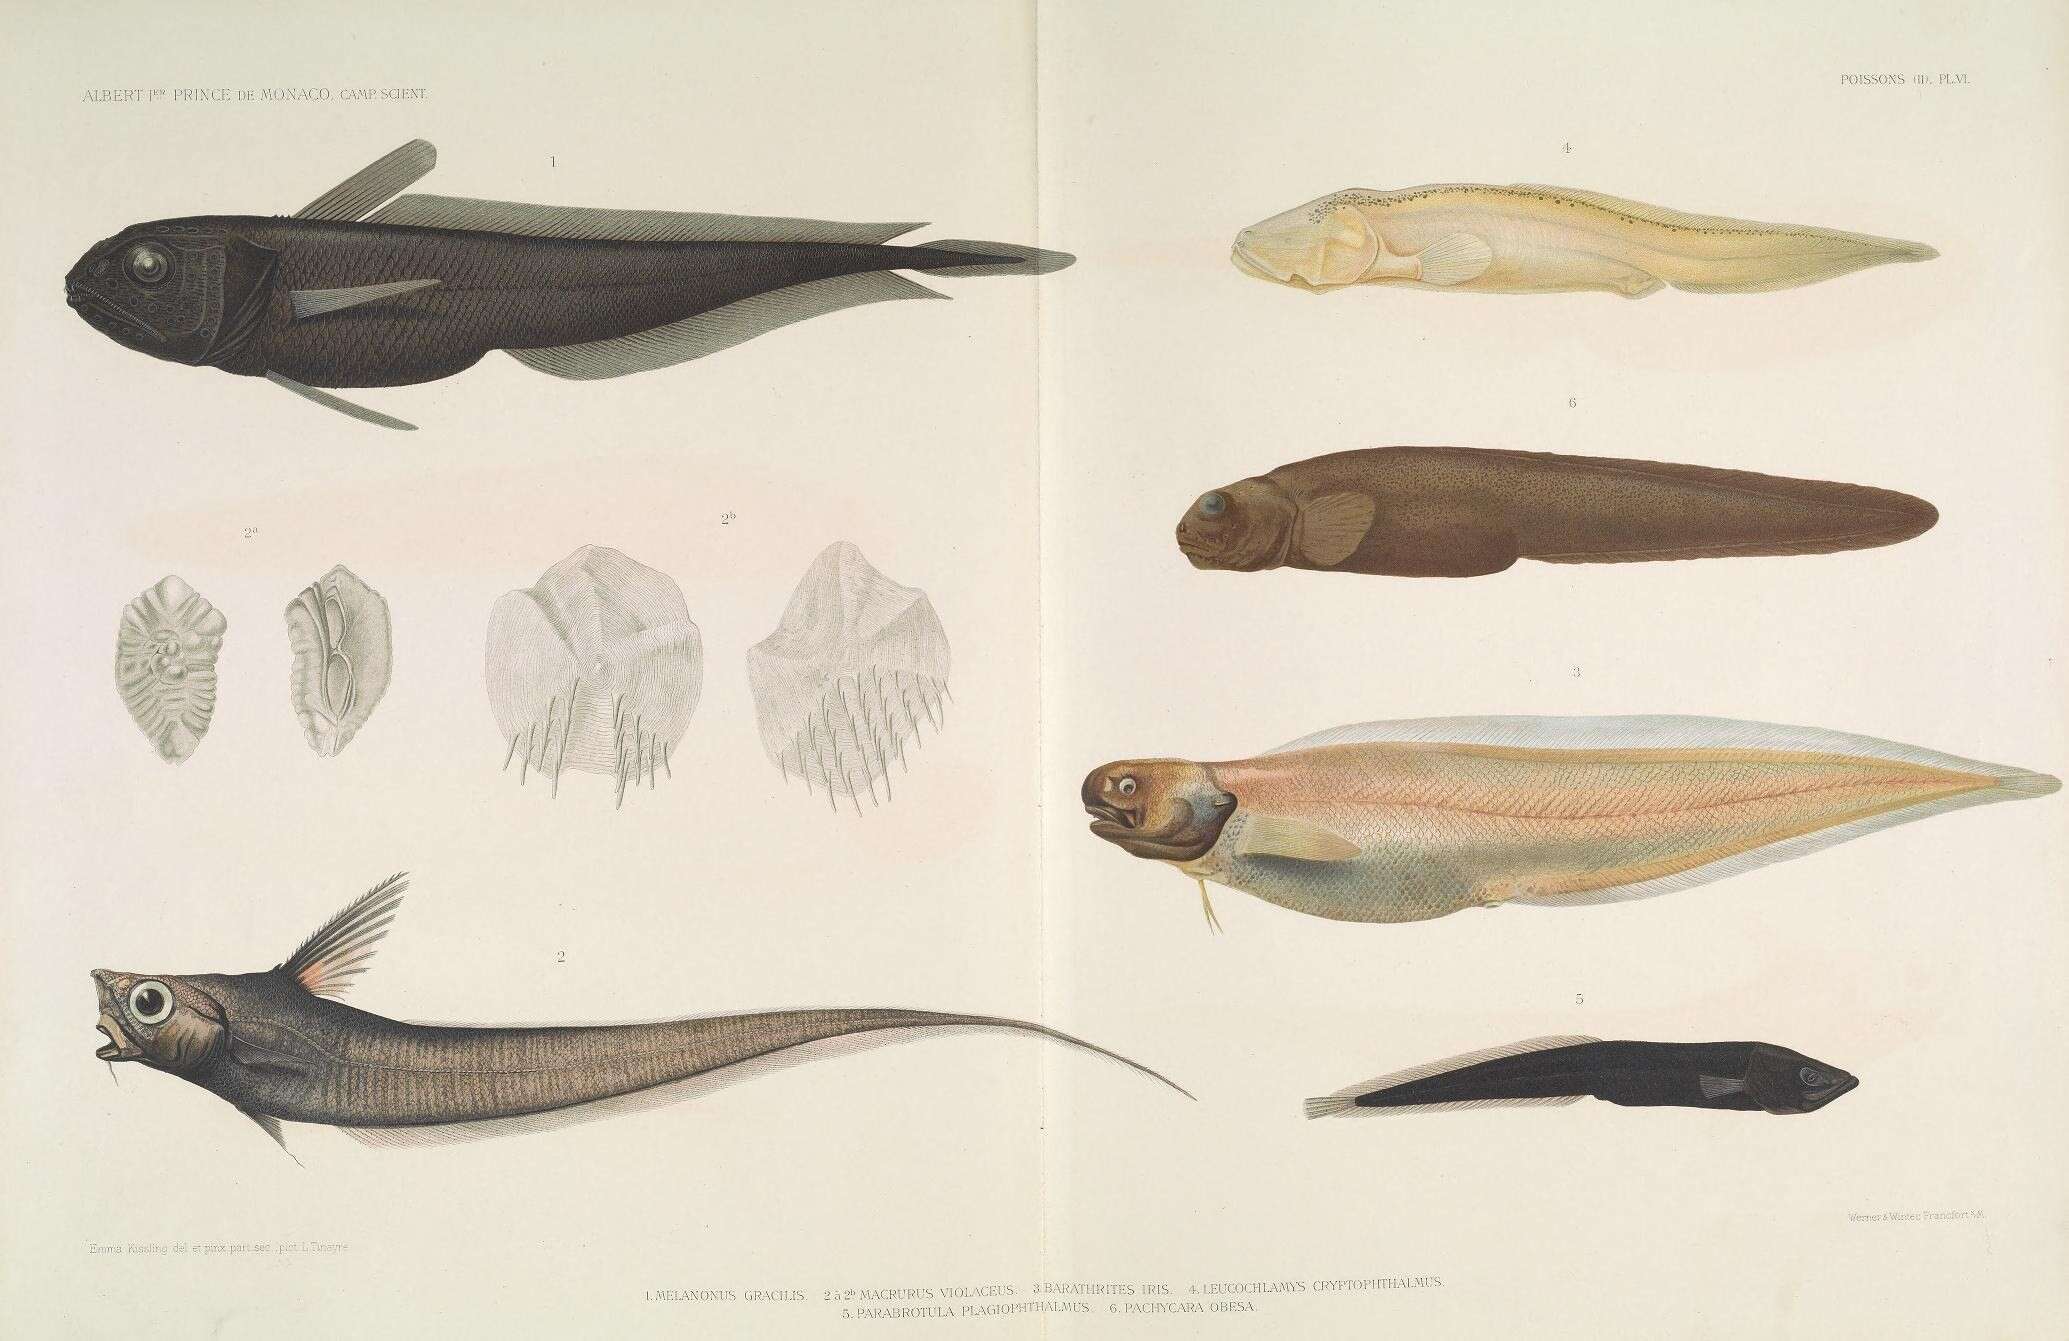 Image of pelagic cods